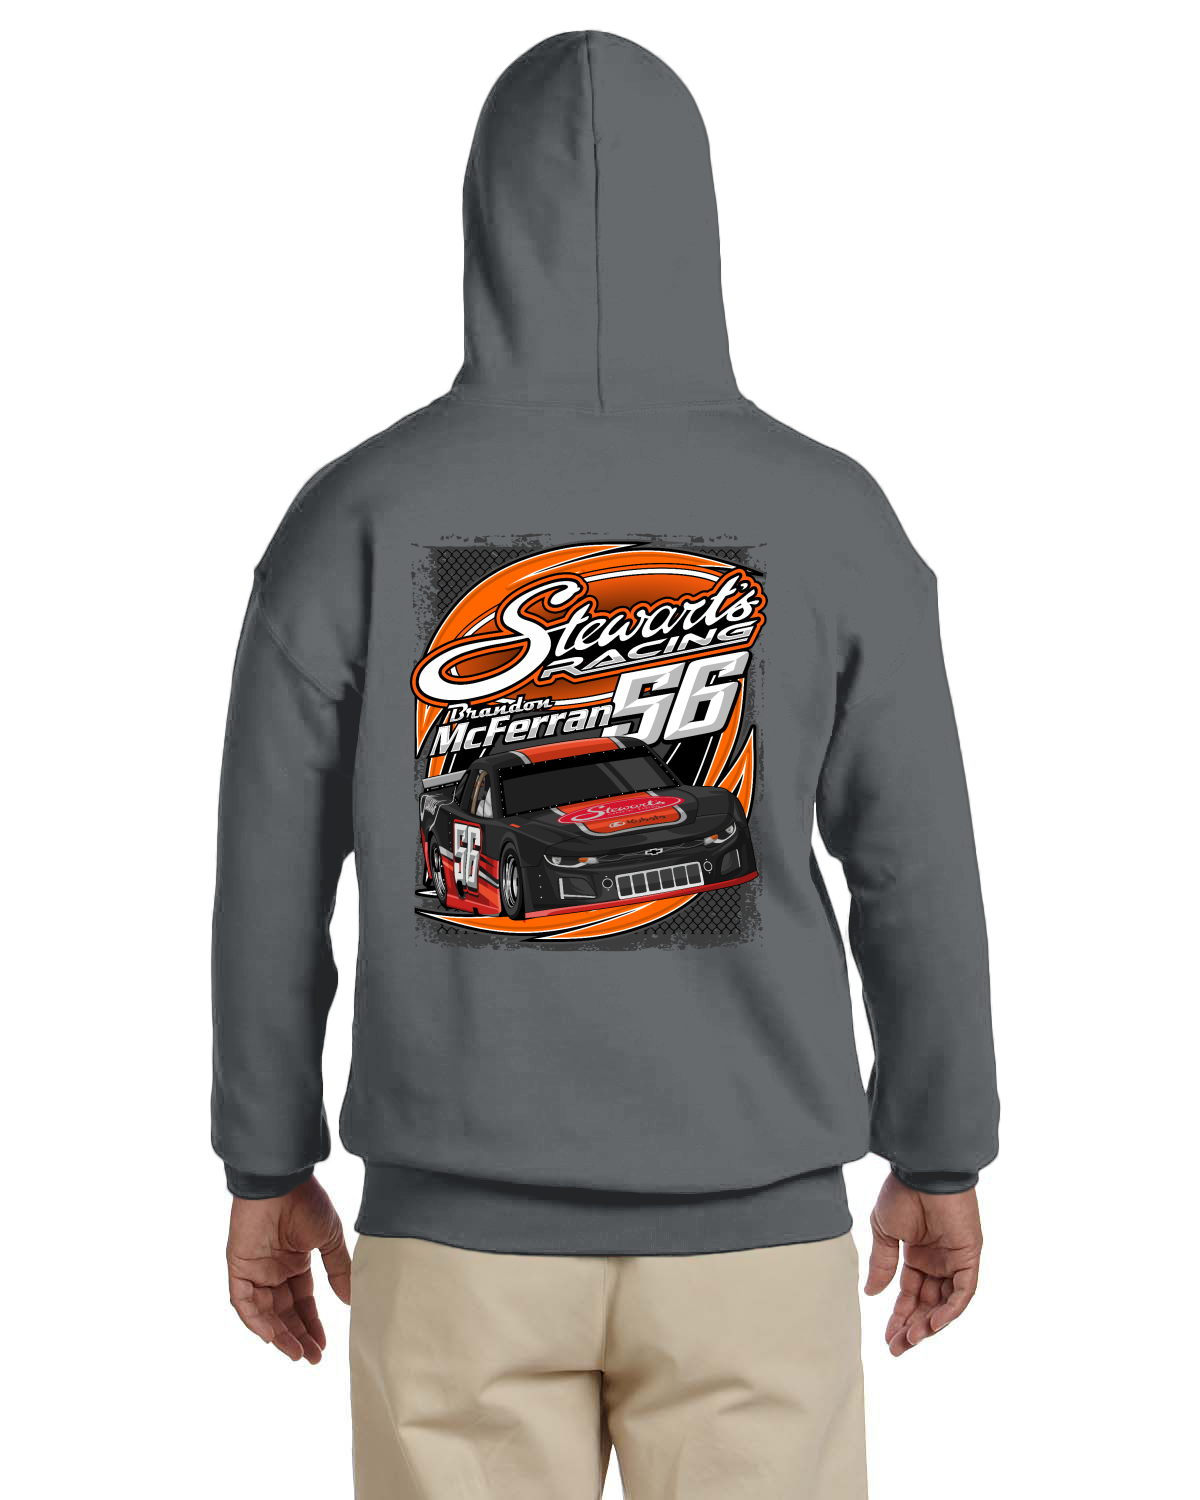 Stewart's Racing Brandon McFerran 56 adult hoodie